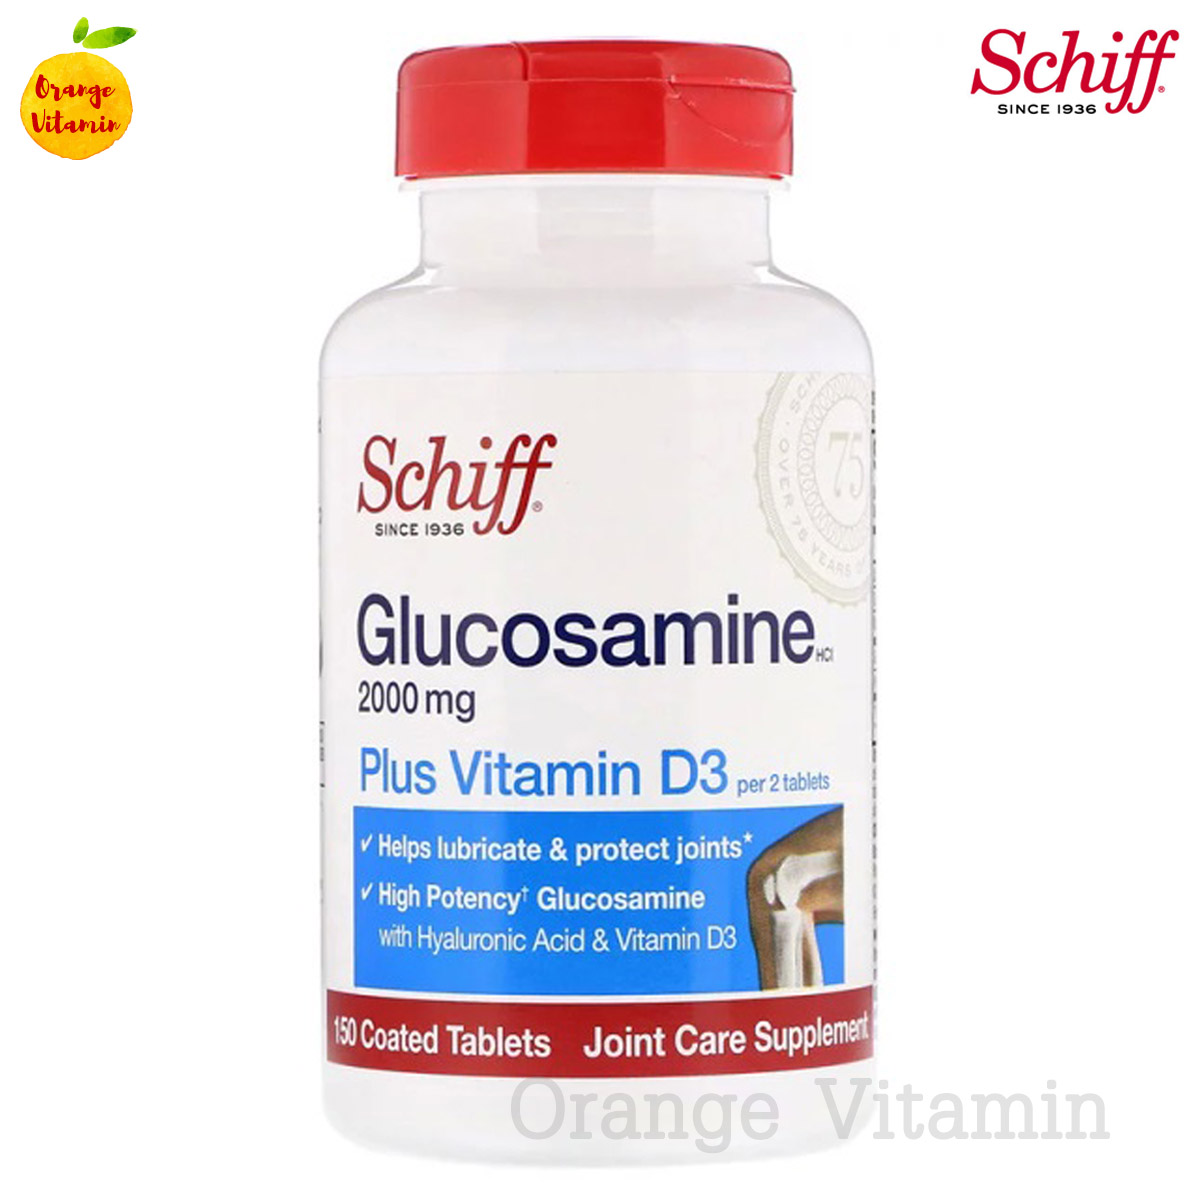 ชิฟฟ์ กลูโคซามีน Schiff, Glucosamine, Plus Vitamin D3, 2000 mg, 150 Coated Tablets กลูโคซามีน พลัส วิตามินดี ไฮยาลูรอน